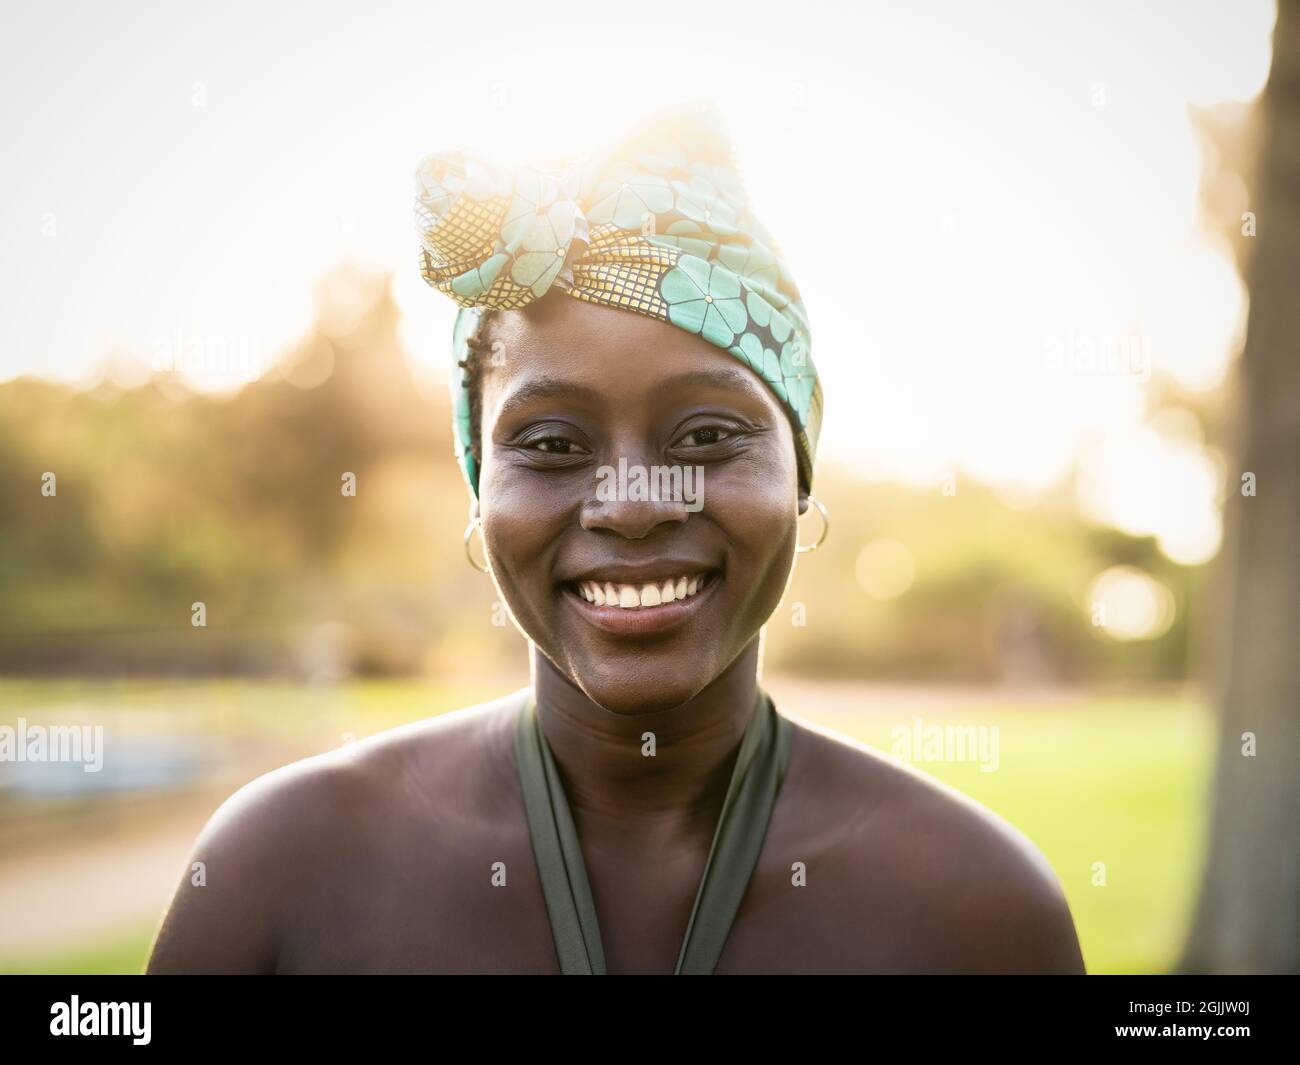 Portrait d'une femme africaine heureuse portant un turban traditionnel coloré - concept de culture et de tradition noires afro Banque D'Images